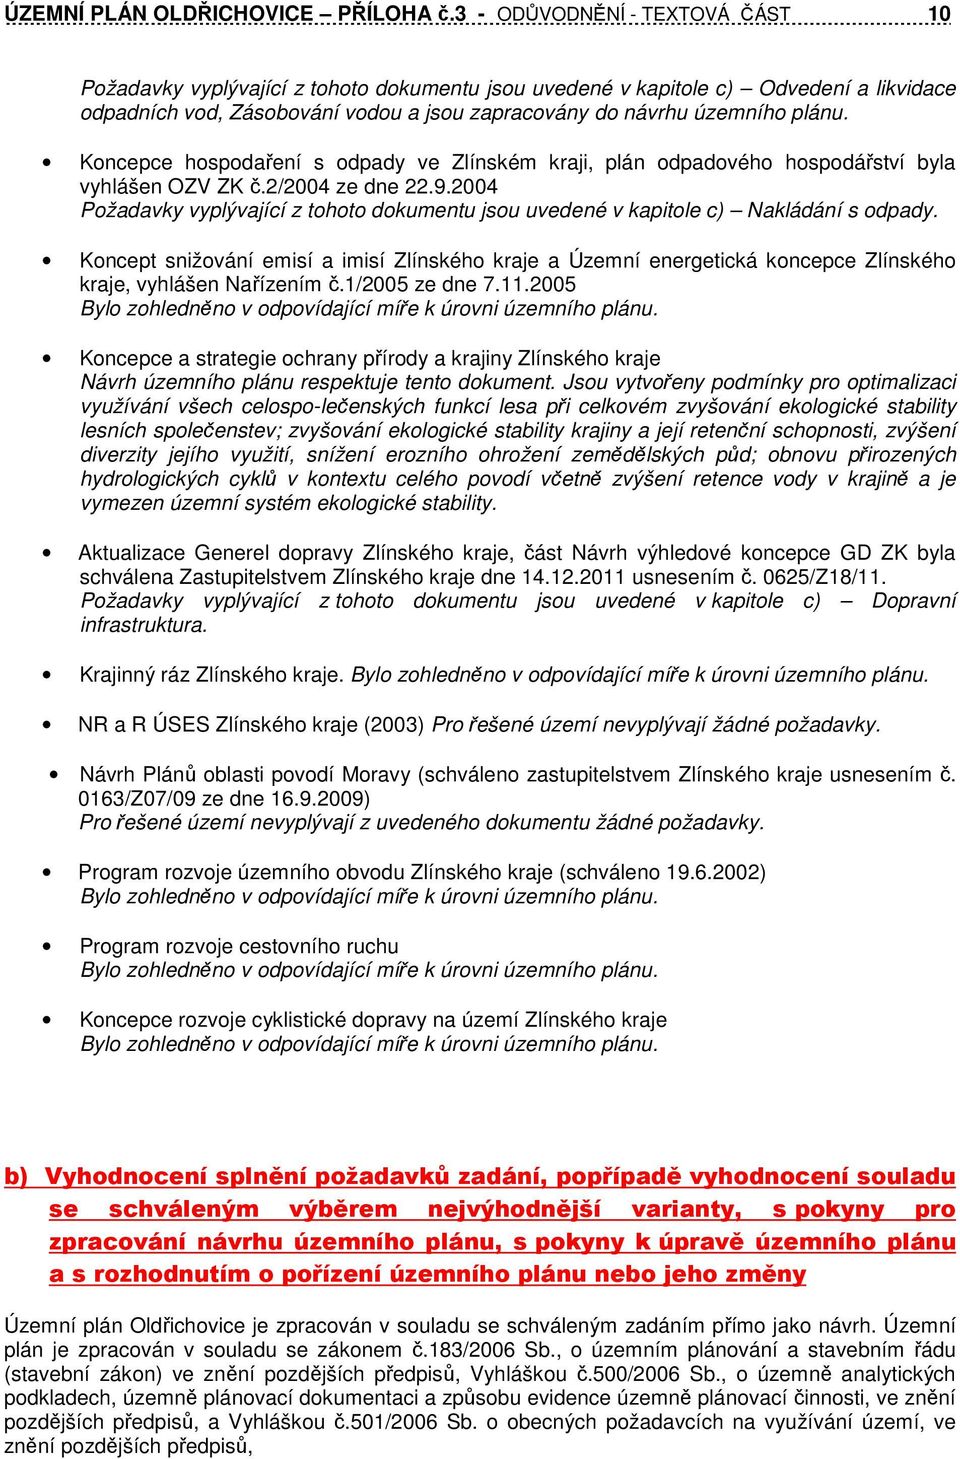 Koncepce hospodaření s odpady ve Zlínském kraji, plán odpadového hospodářství byla vyhlášen OZV ZK č.2/2004 ze dne 22.9.